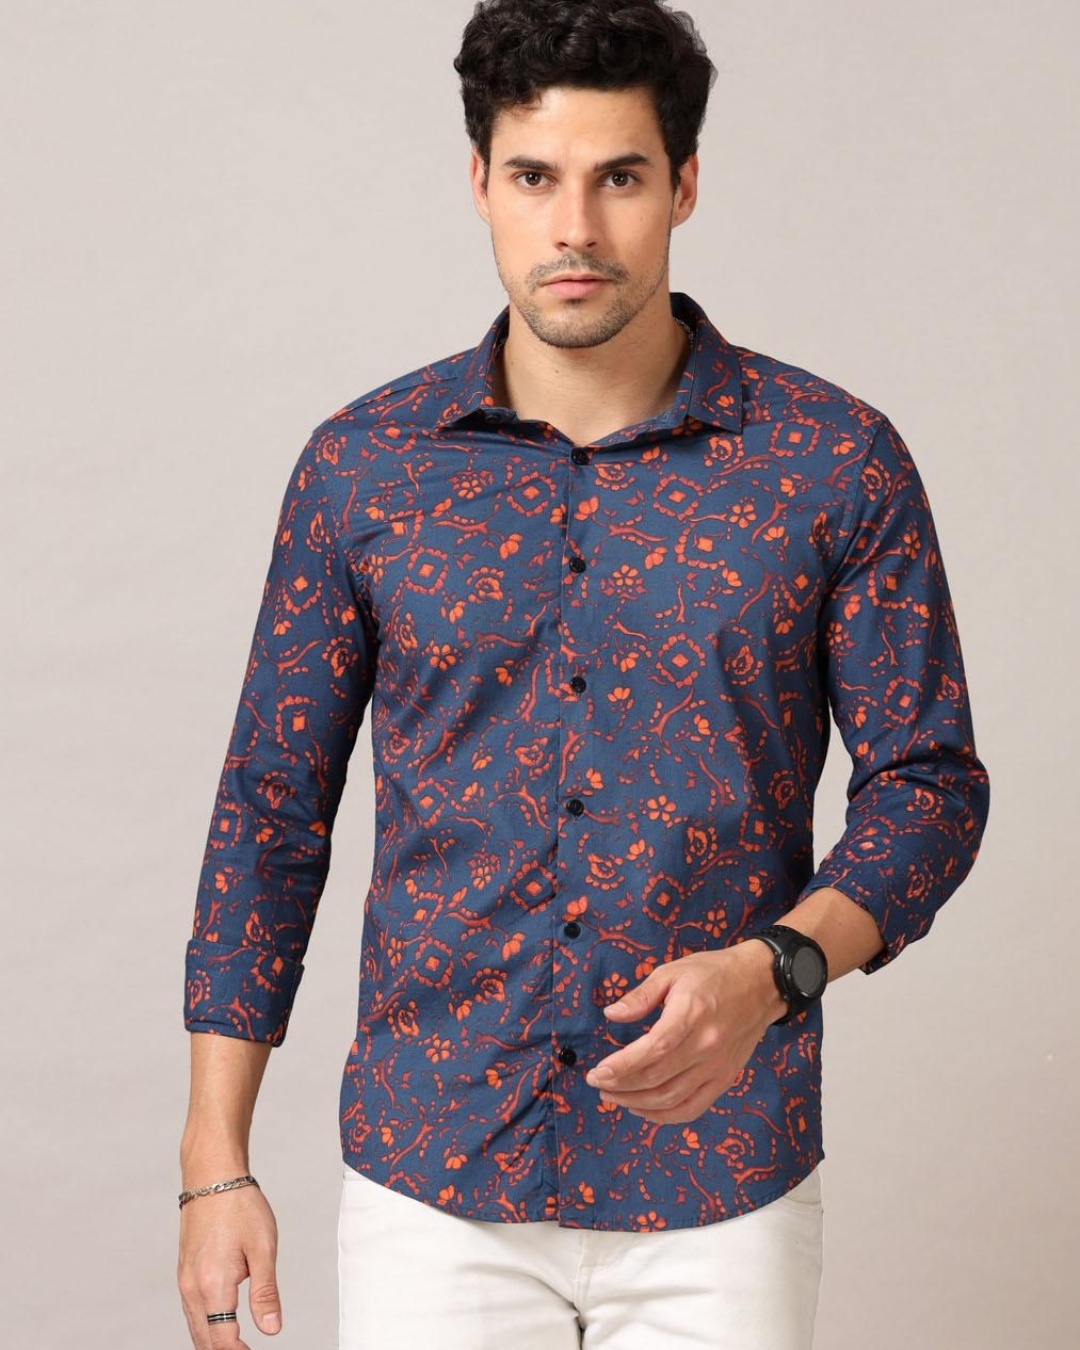 Buy Bushirt Men's Blue Floral Printed Slim Fit Shirt Online at Bewakoof